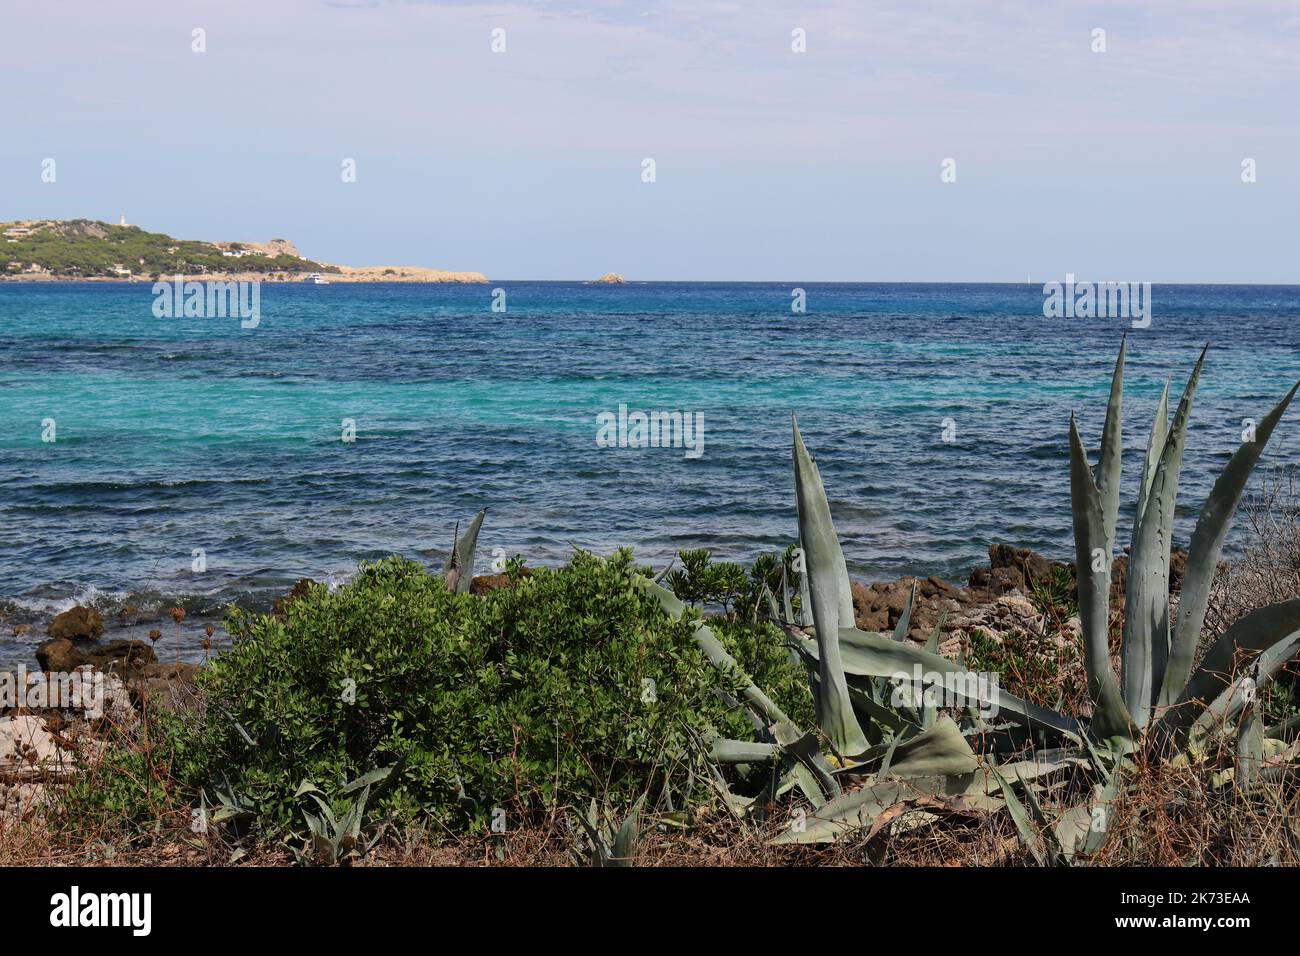 Vue sur la mer Méditerranée bleue et turquoise avec végétation verte en premier plan, Cala Ratjada, Majorque, espace copie Banque D'Images